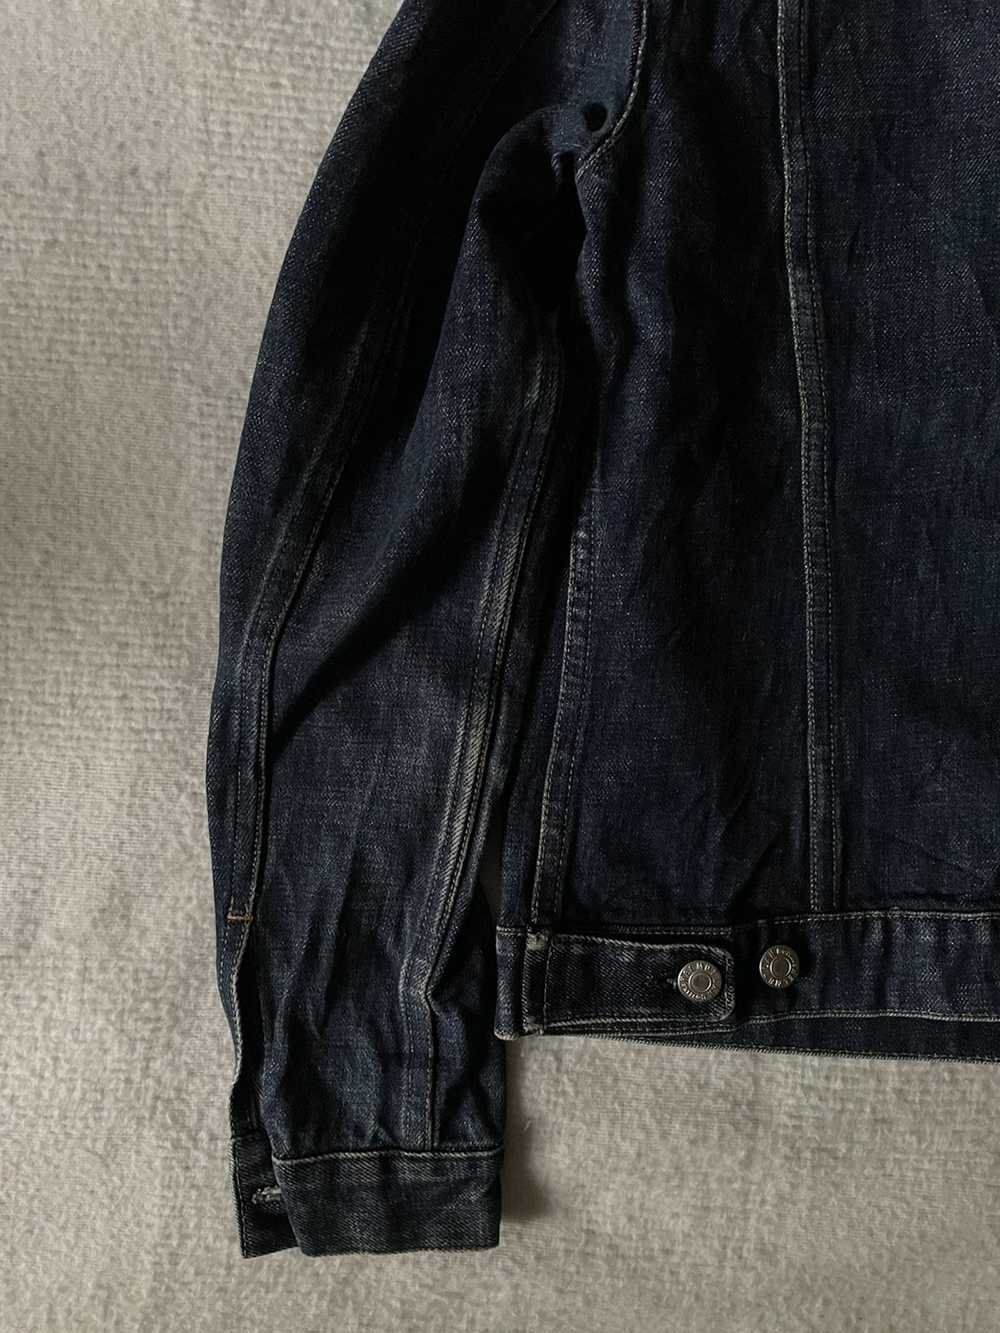 Helmut Lang × Vintage Helmut Lang Raw Denim Jacket - image 5